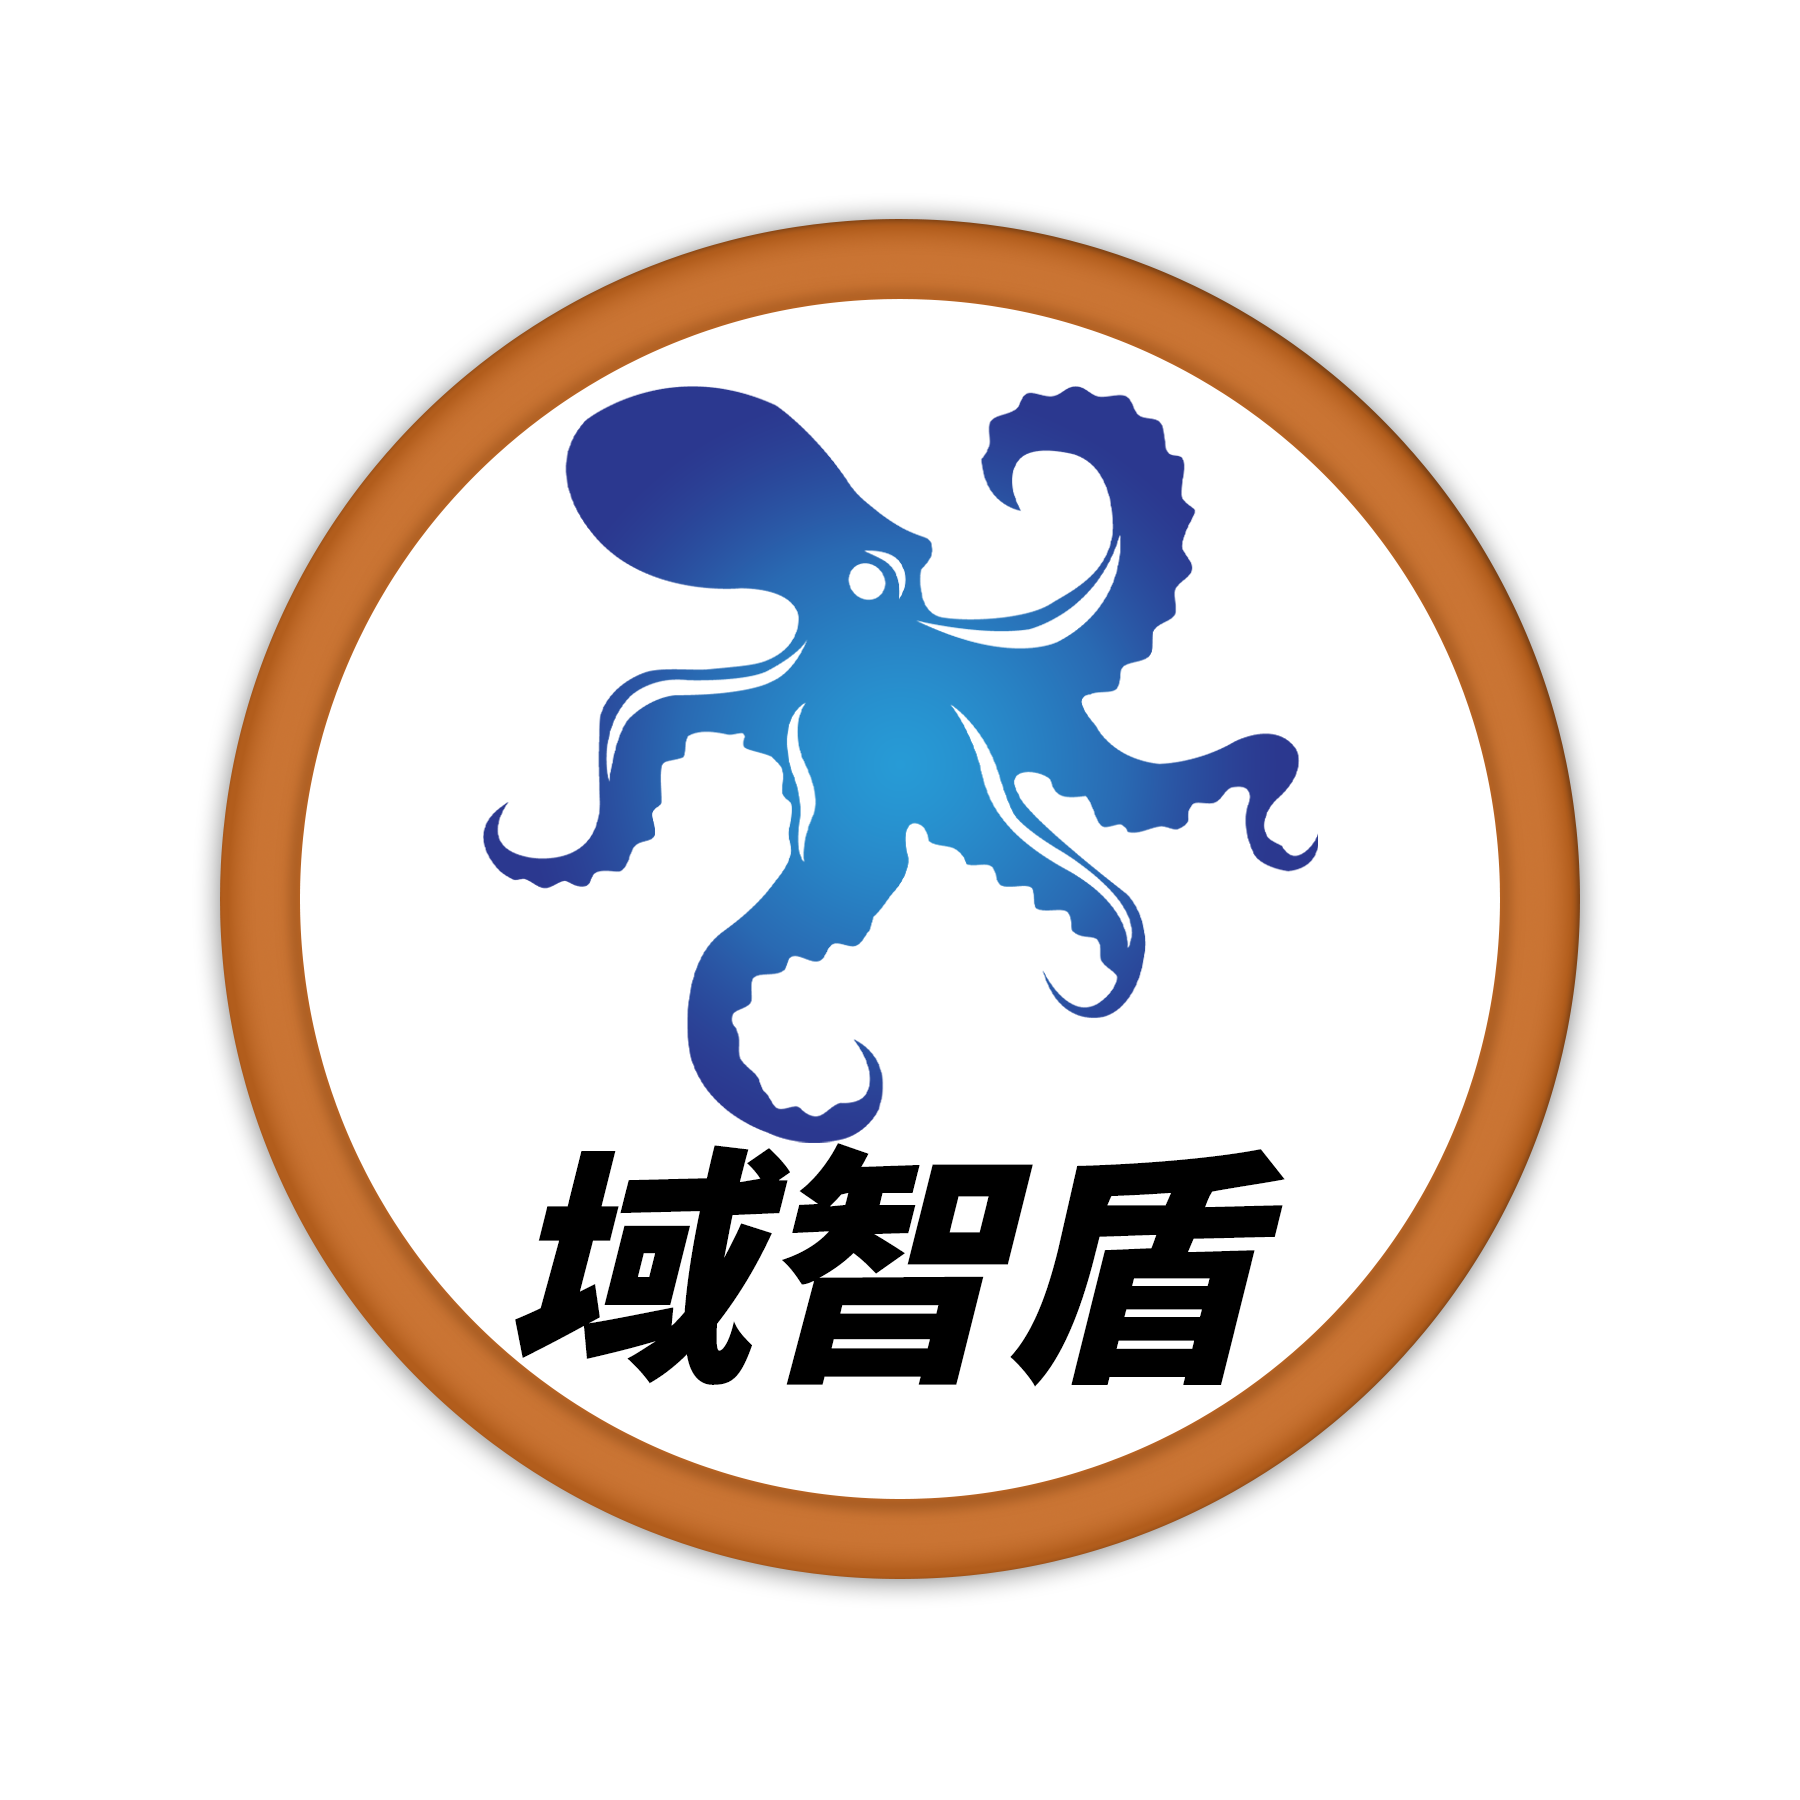 域之盾logo.png